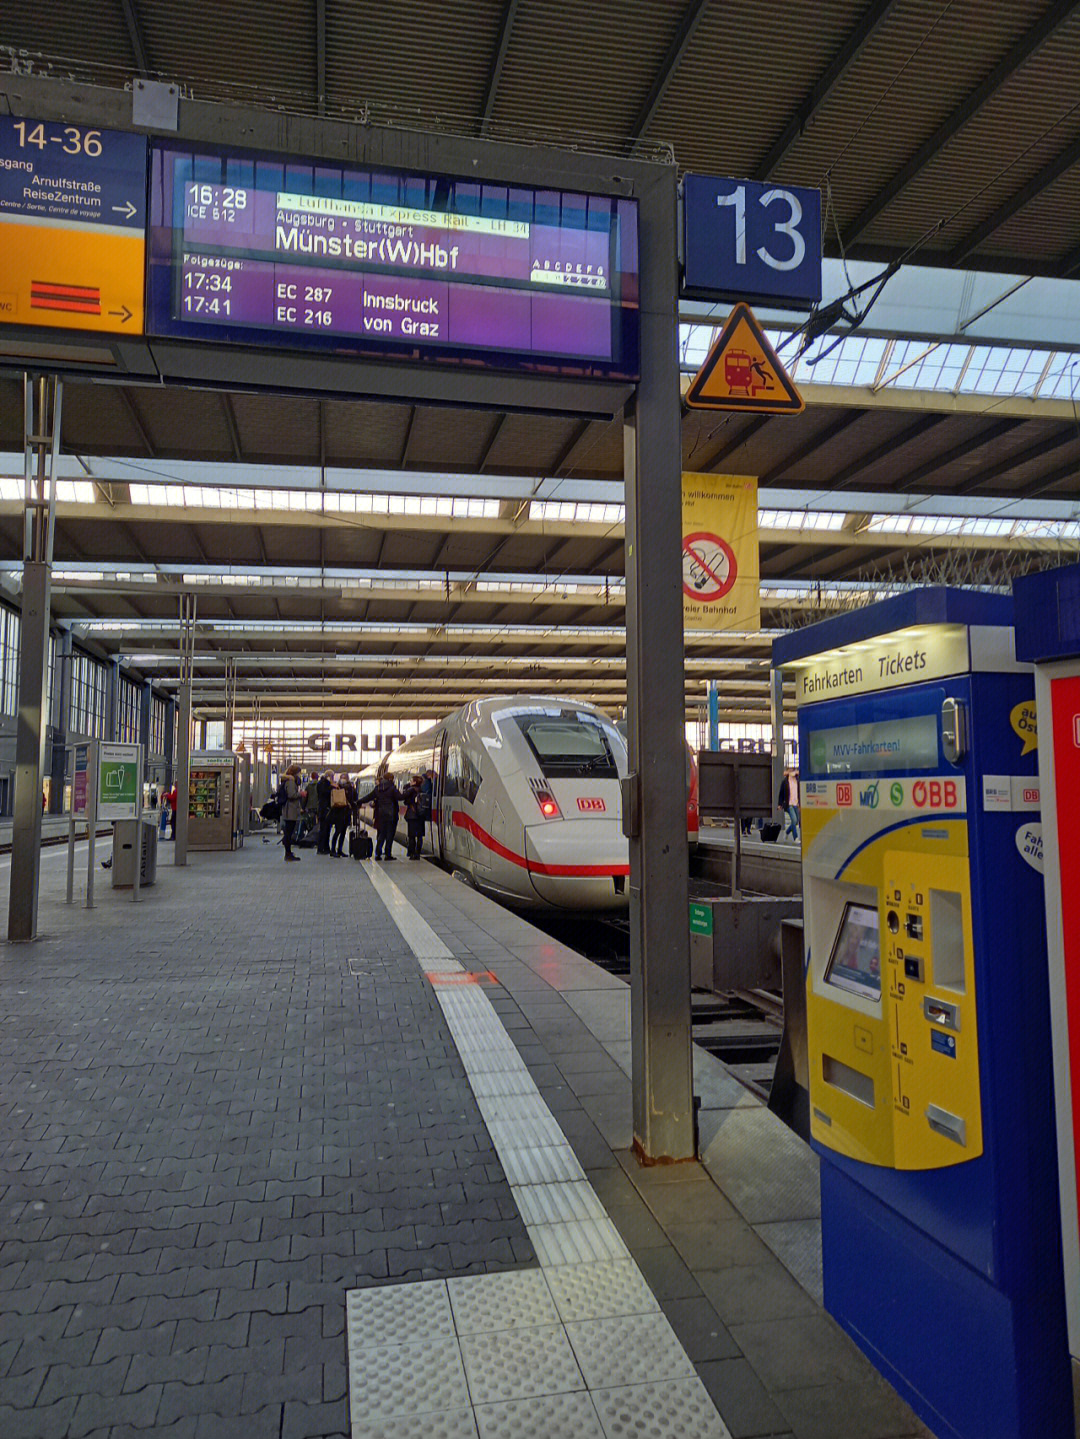 慕尼黑火车00站设计和法国巴黎00一样